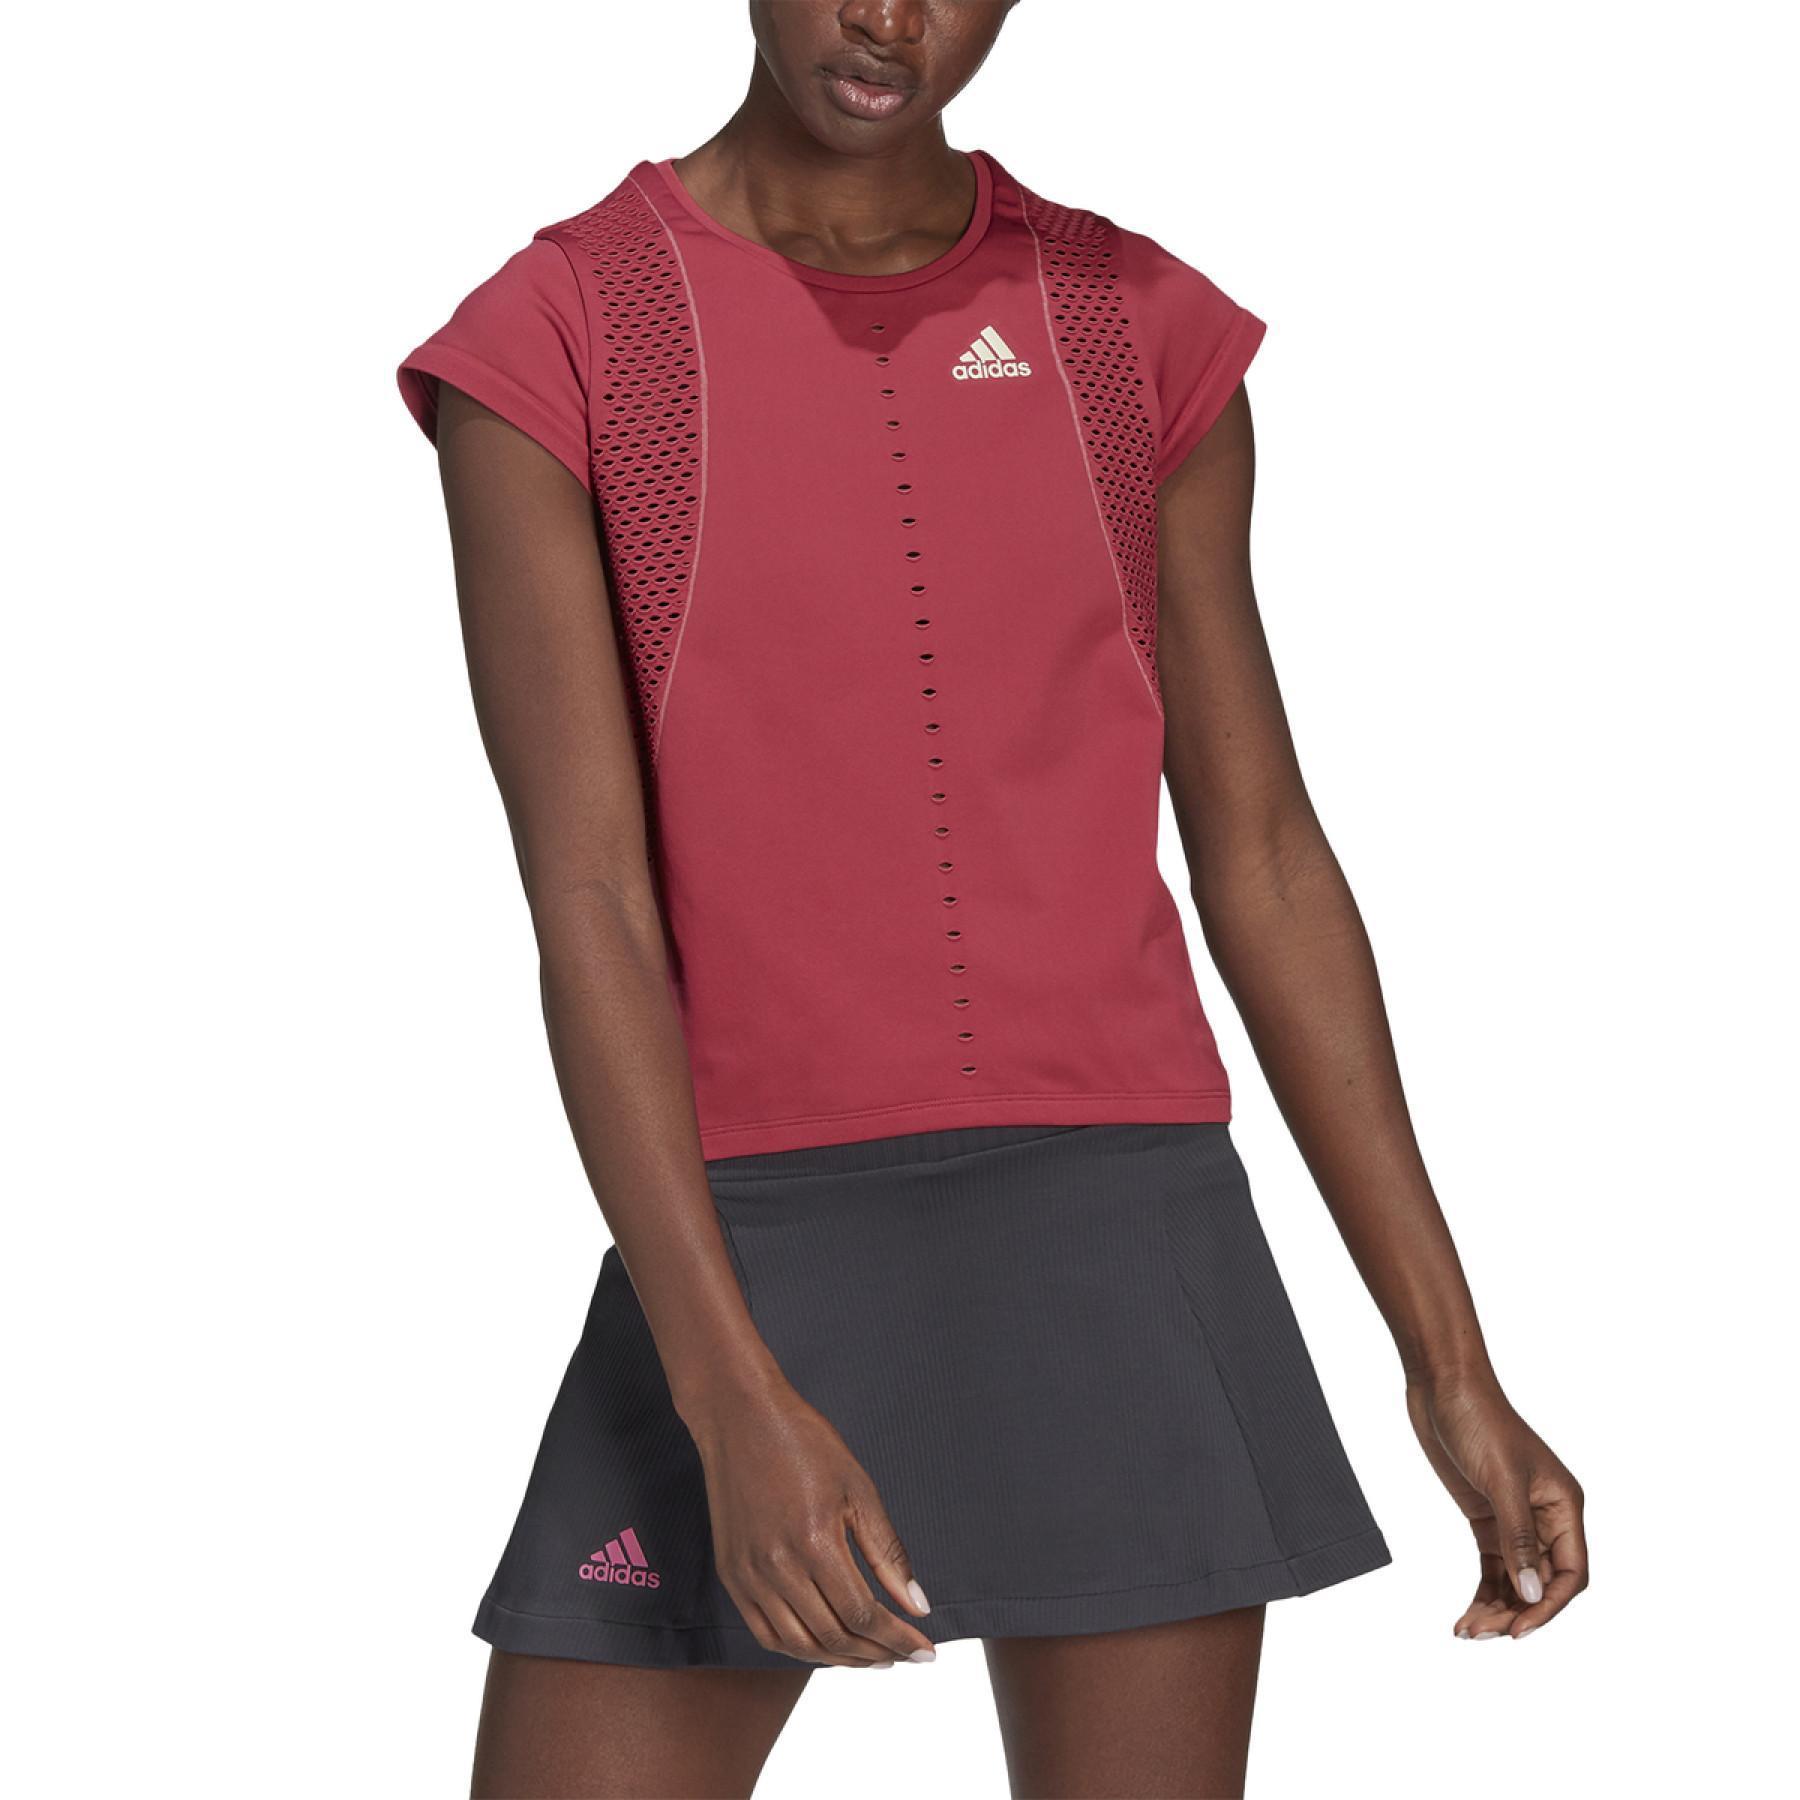 Camiseta feminina adidas Tennis Primeknit Primeblue